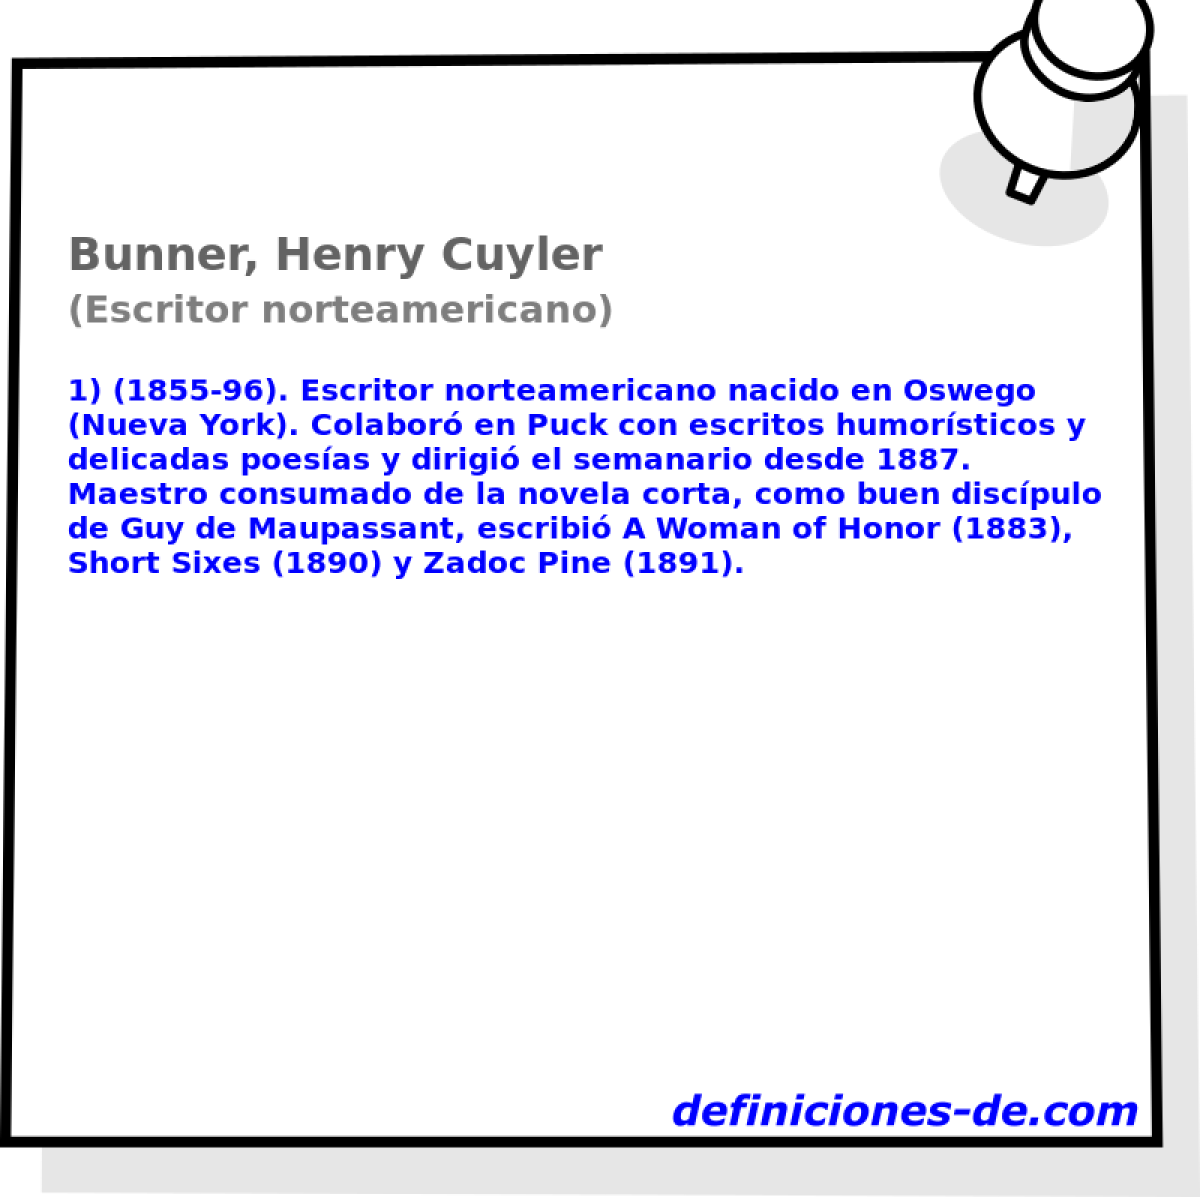 Bunner, Henry Cuyler (Escritor norteamericano)